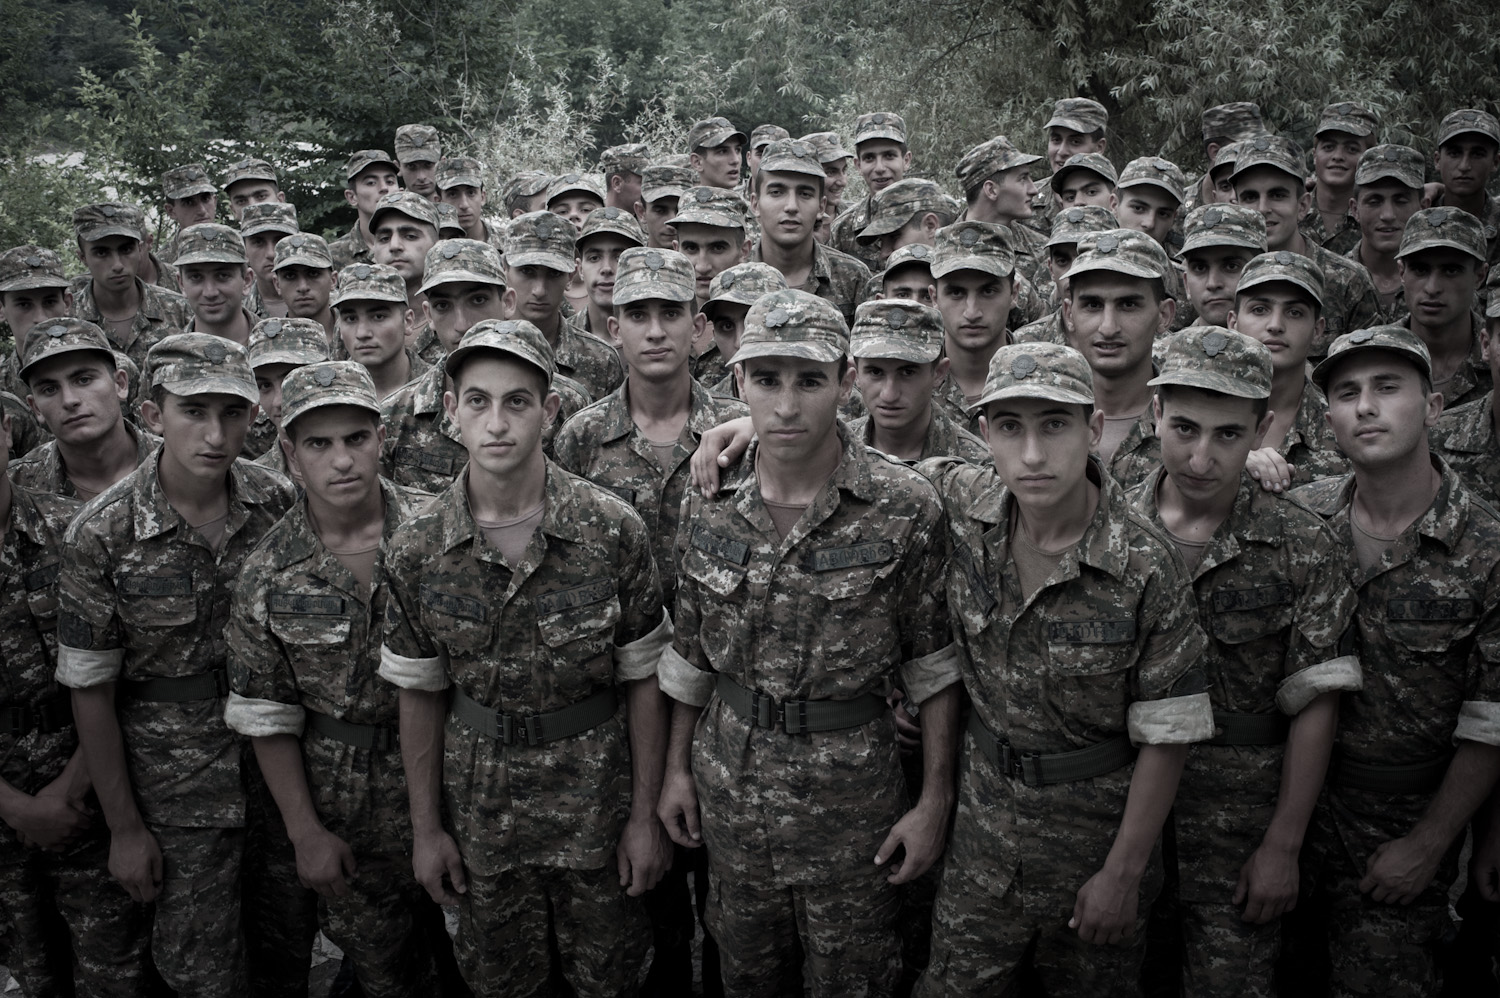  Conscripts at the Yeghnikner military base, Nagorno-Karabakh.  